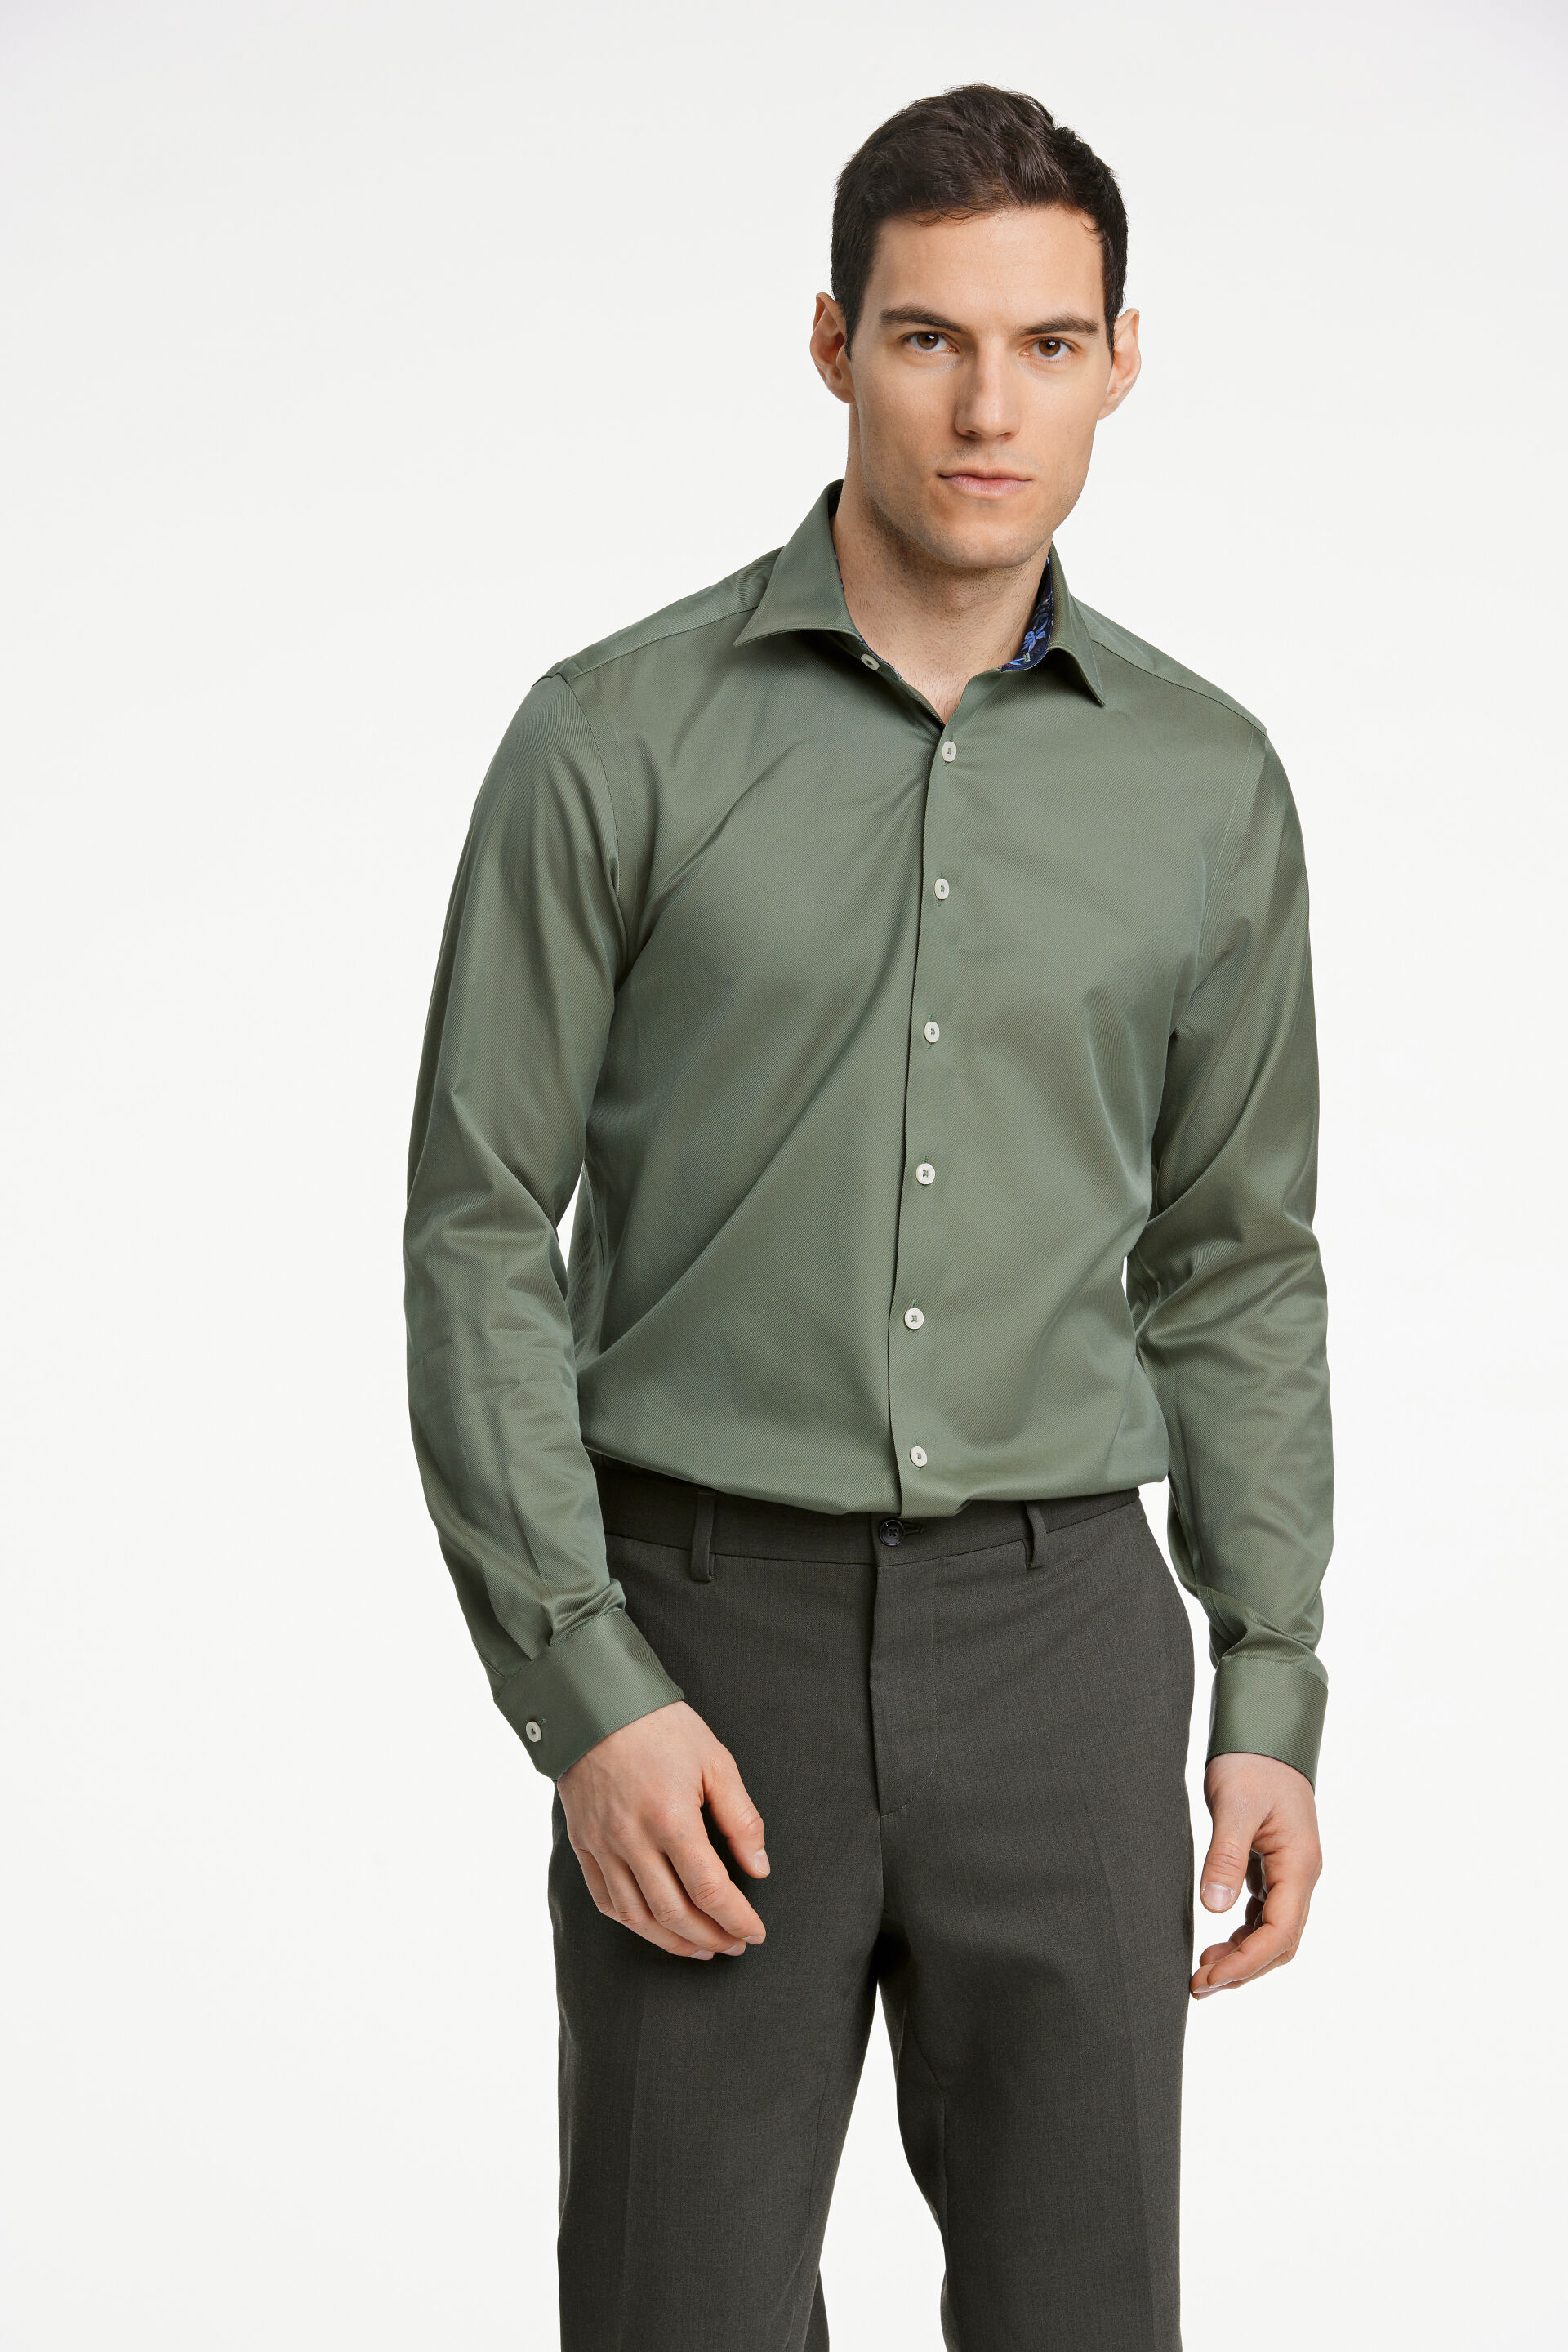 1927 Business casual shirt Business casual shirt Green 30-247188